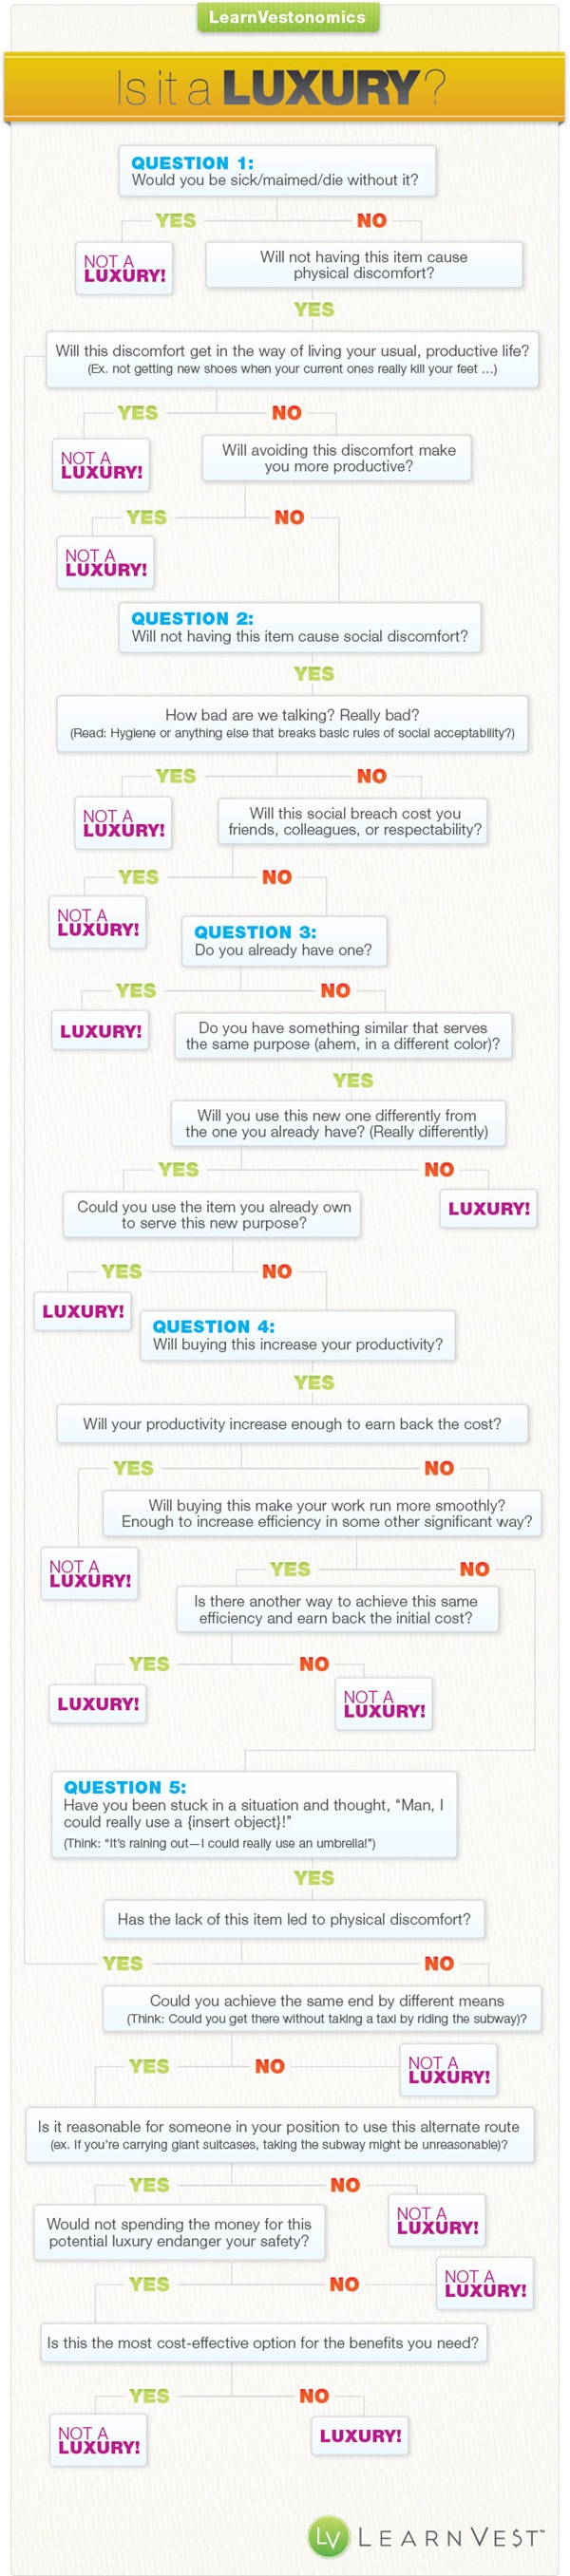 Luxury Infographic